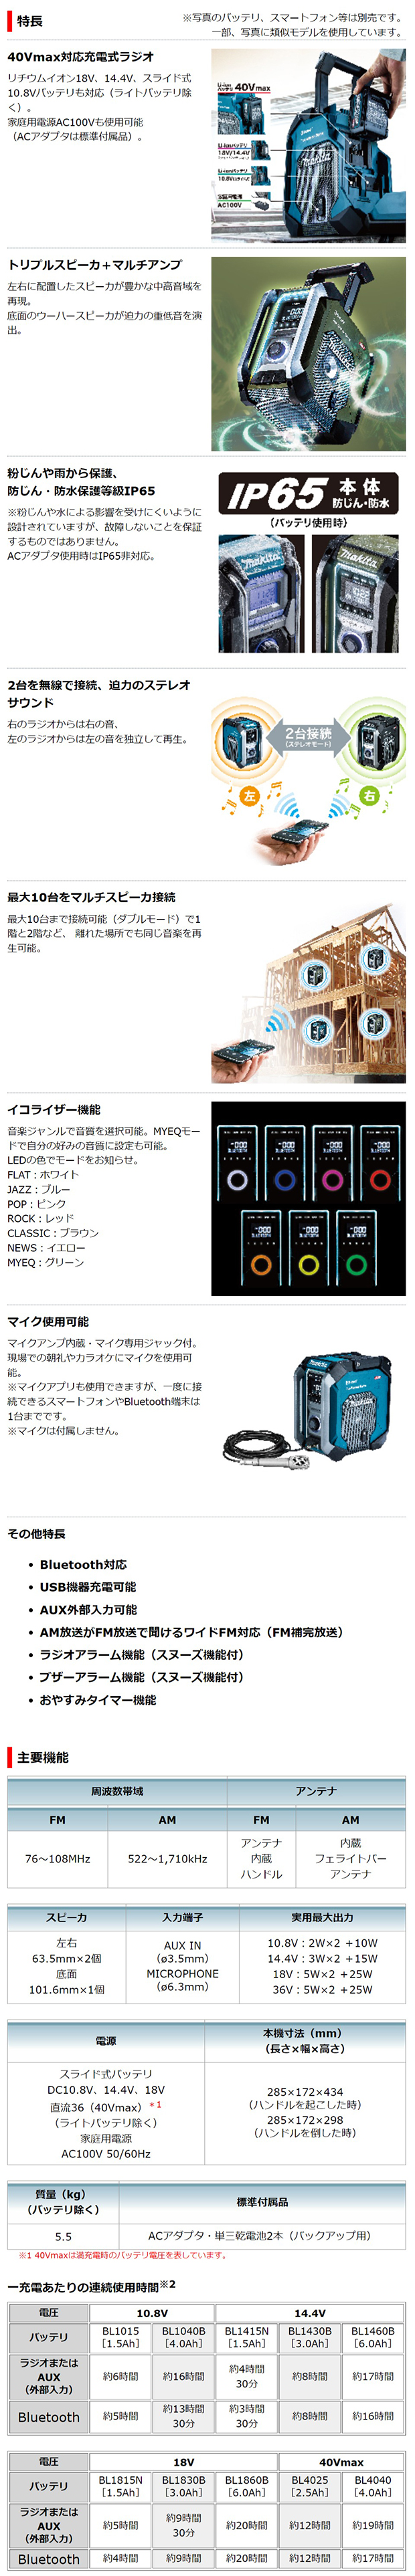 マキタ 40Vmax充電式ラジオMR005G【トリプルスピーカー+マルチアンプ 